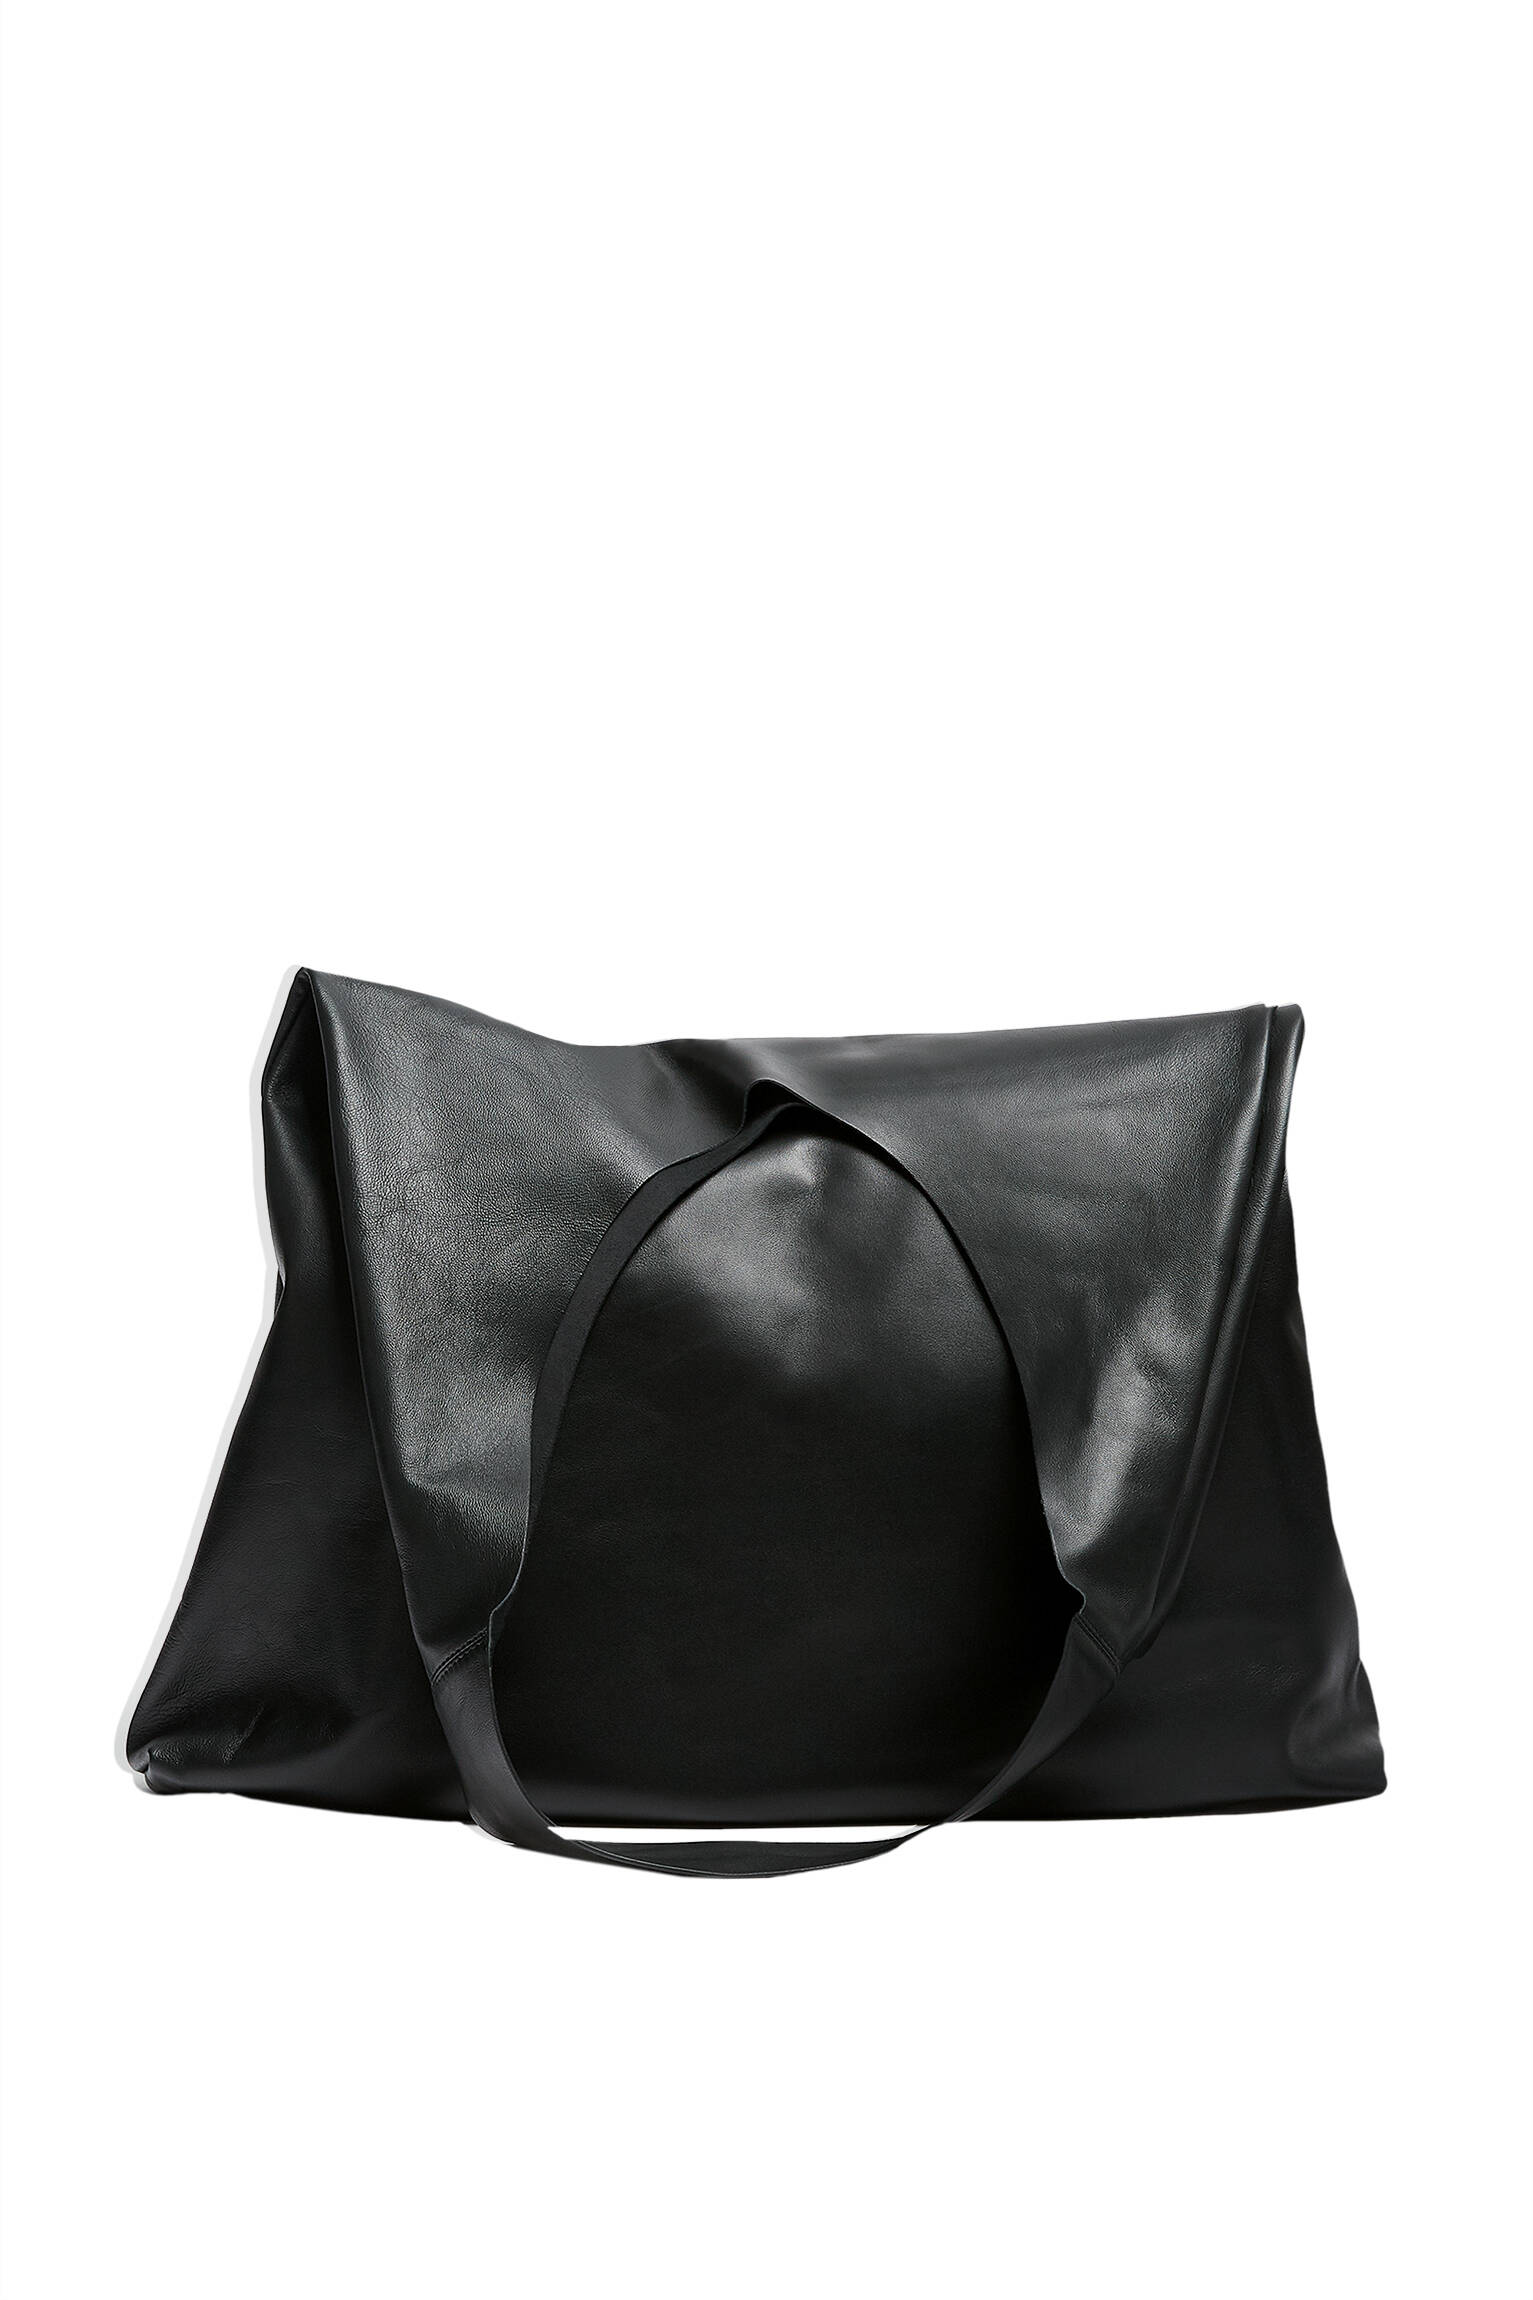 ЧЕРНЫЙ Объемная сумка-шопер из кожи - Лимитированная коллекция Pull & Bear